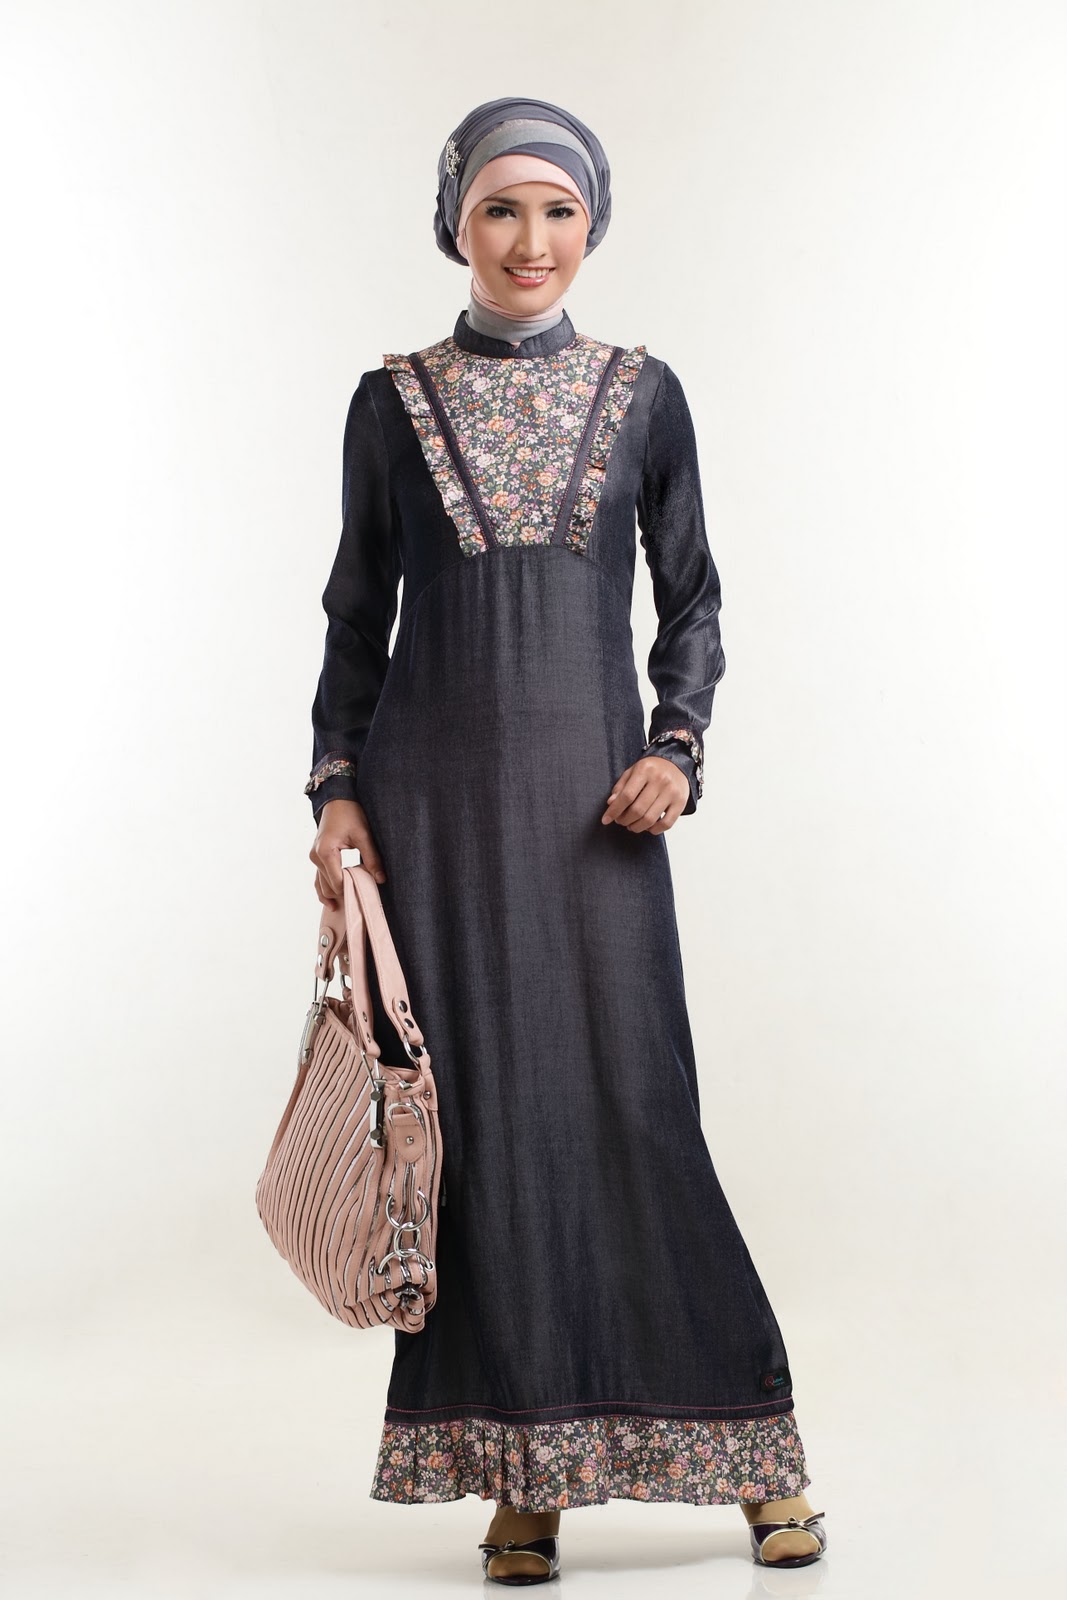 20 Contoh Baju Gamis Muslim Brokat Terbaru 2019